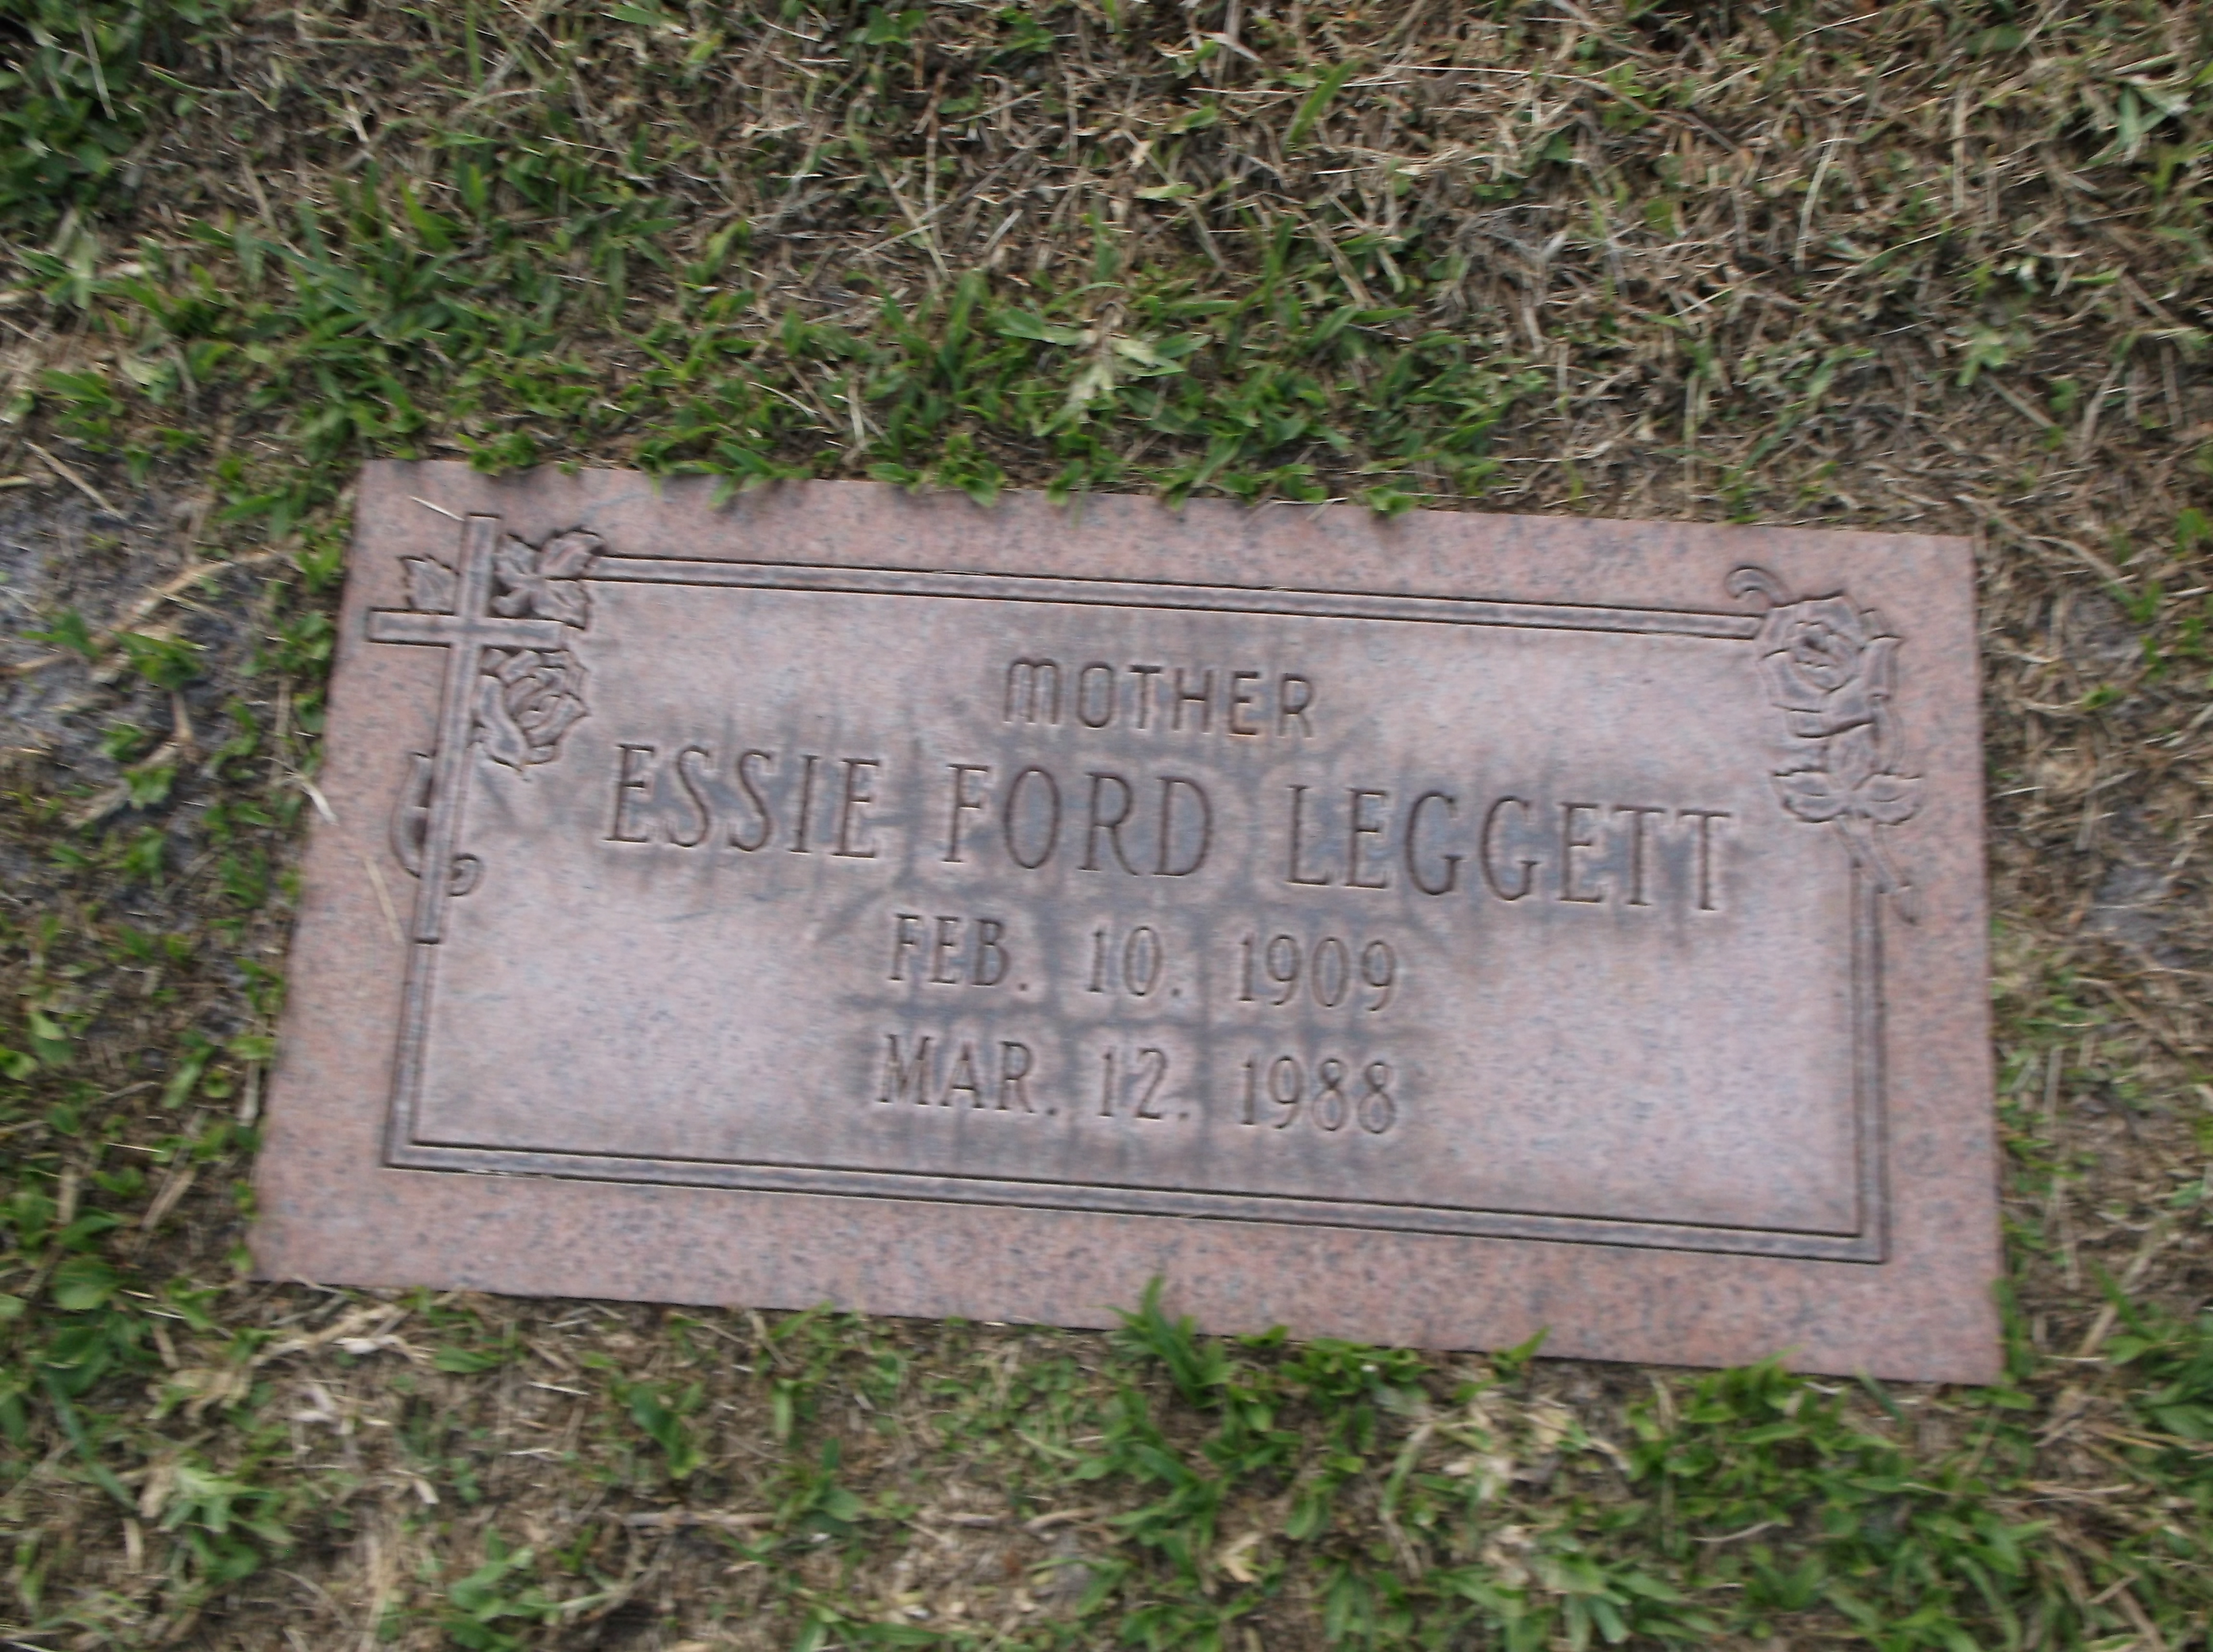 Essie Ford Leggett